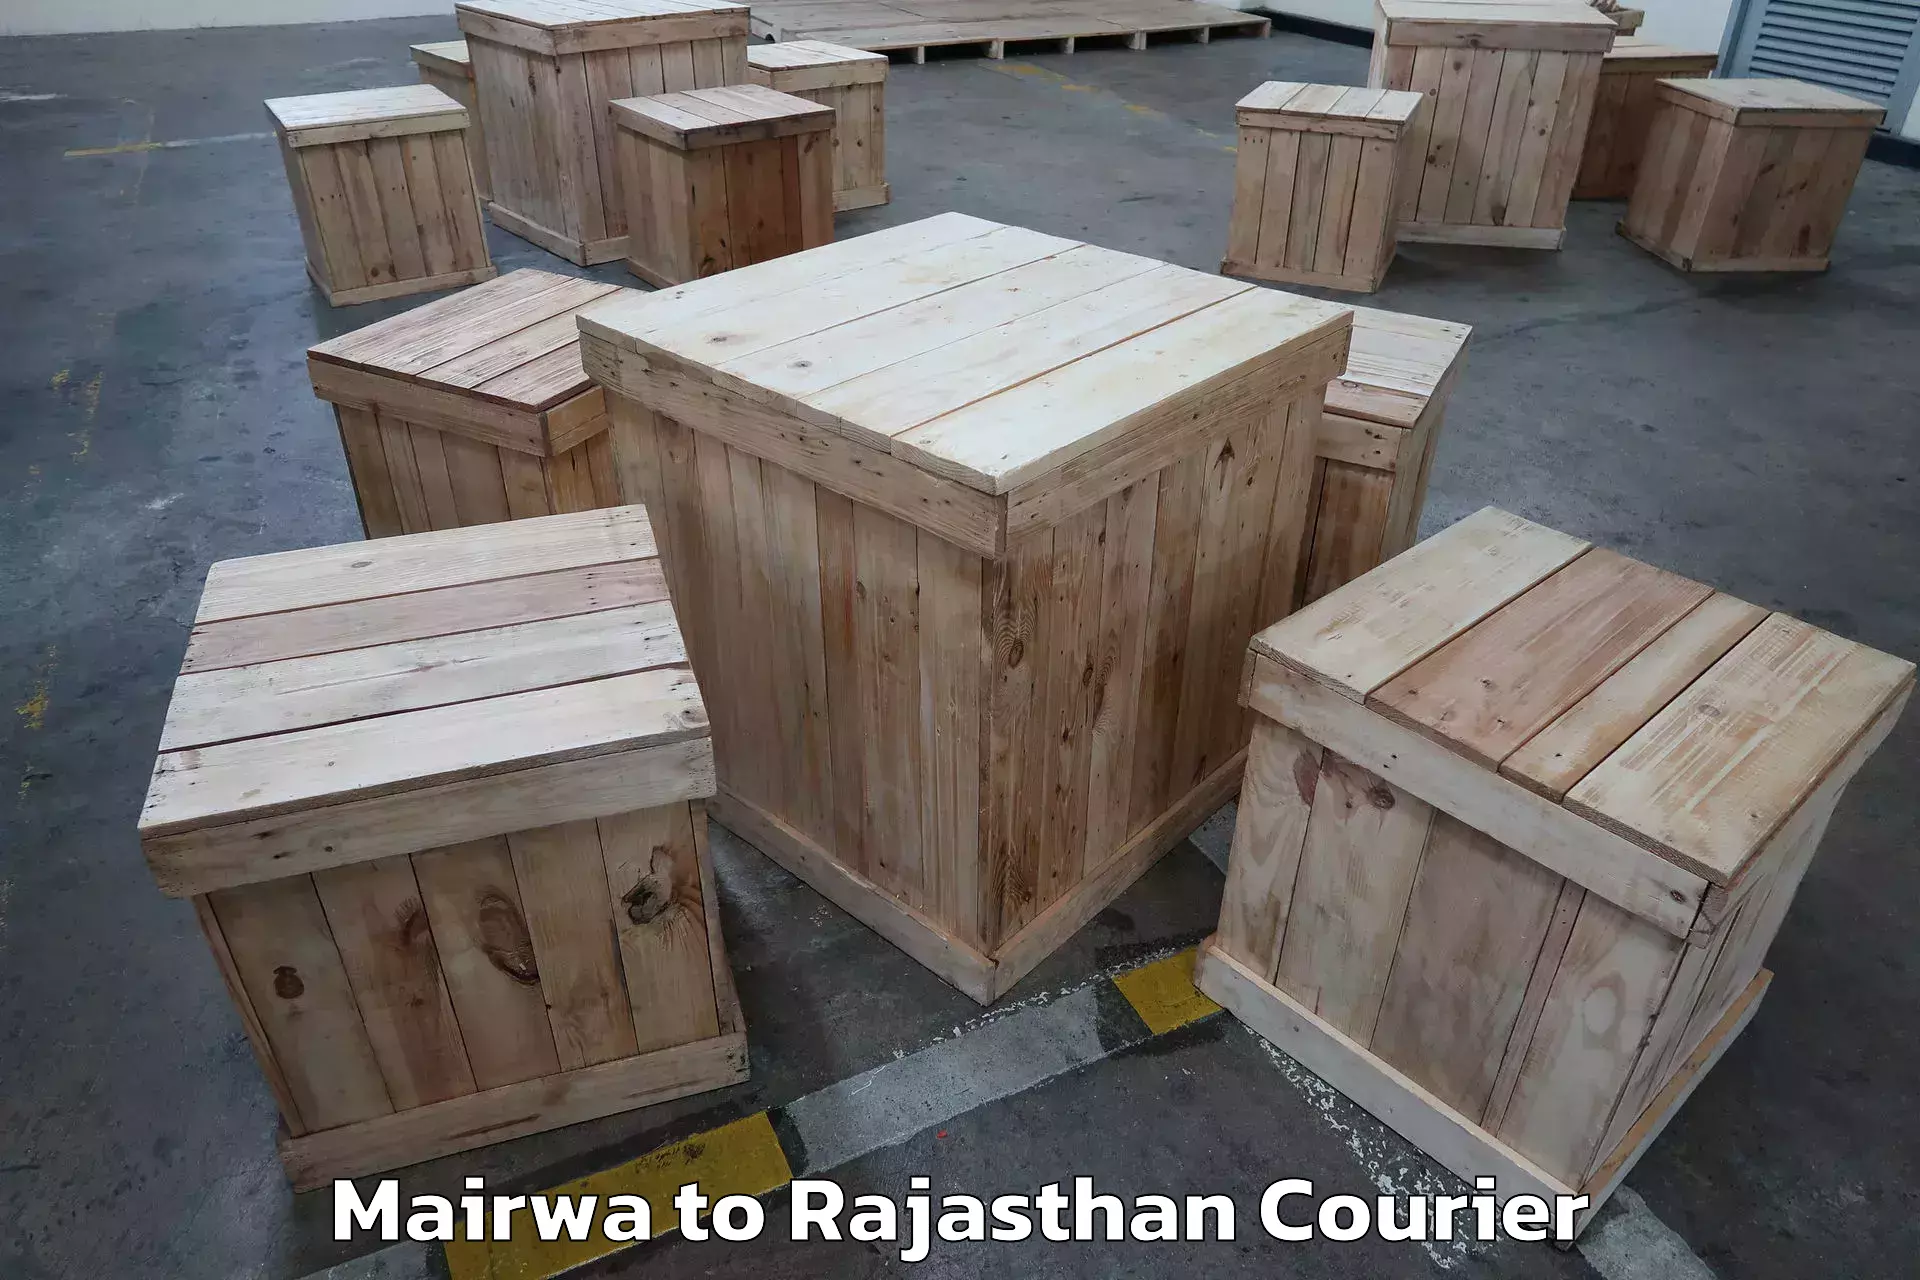 Furniture transport experts Mairwa to Tijara